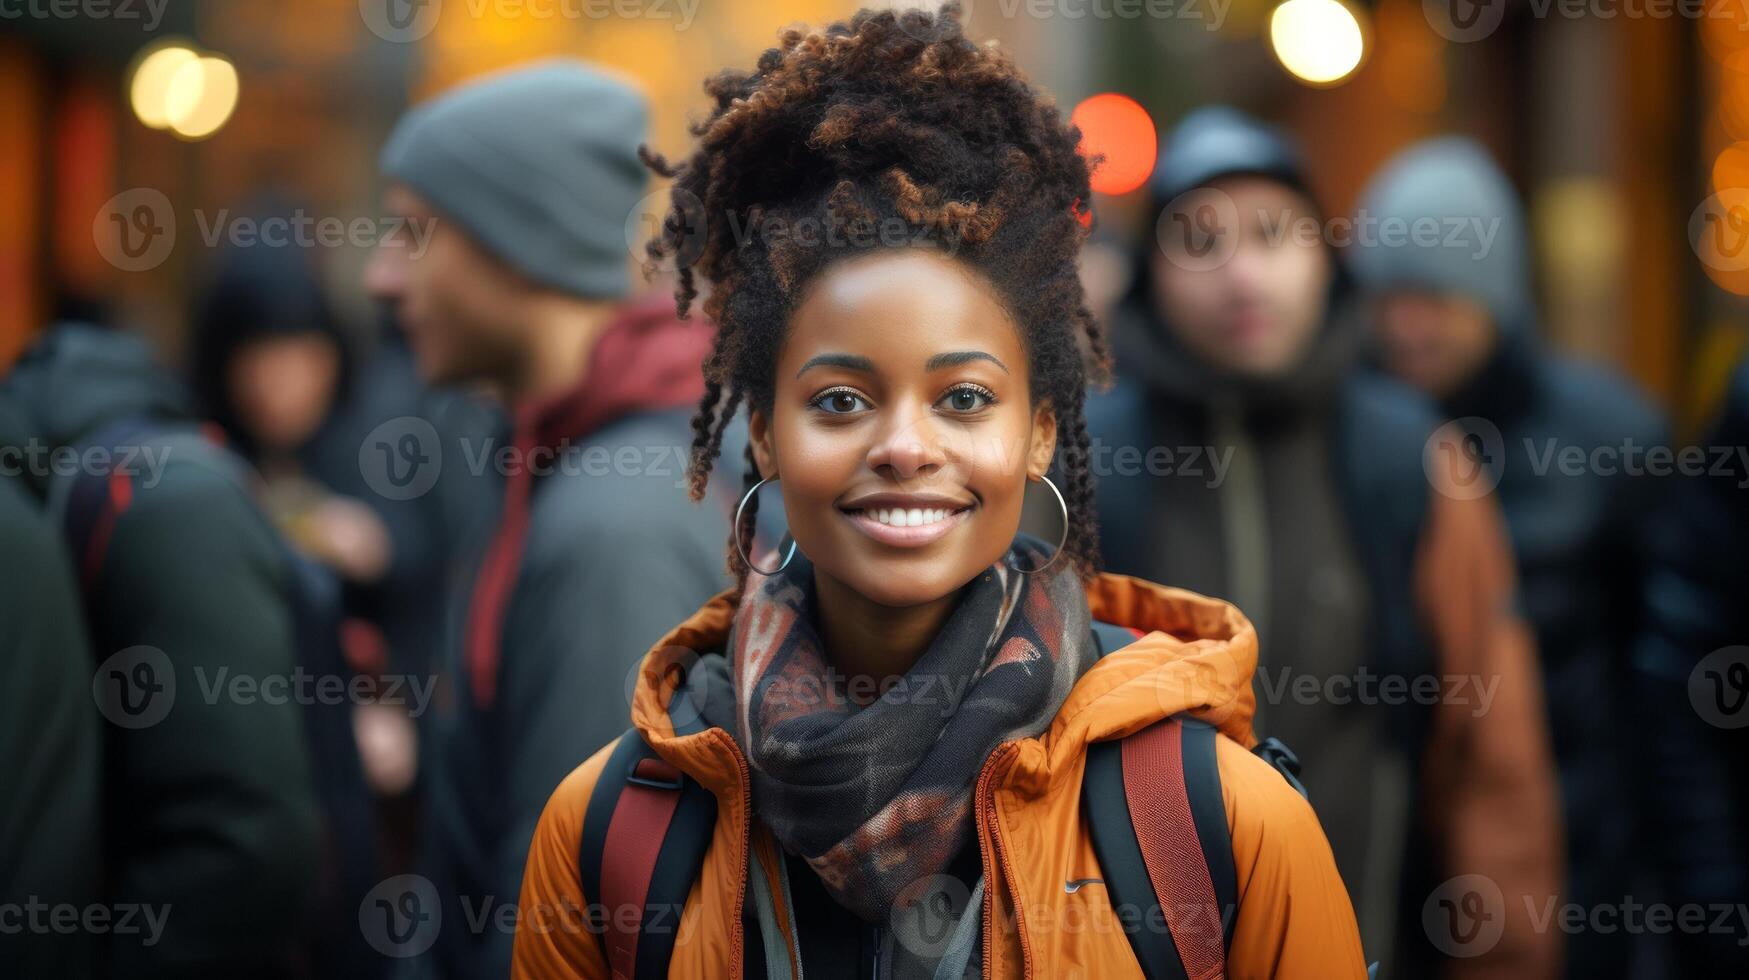 zwart vrouw leerling vluchteling met een rugzak Bij een Universiteit campus. jong vrouw. concept van academisch aspiraties, nieuw begin, immigrant opleiding, vluchteling integratie, verscheidenheid foto